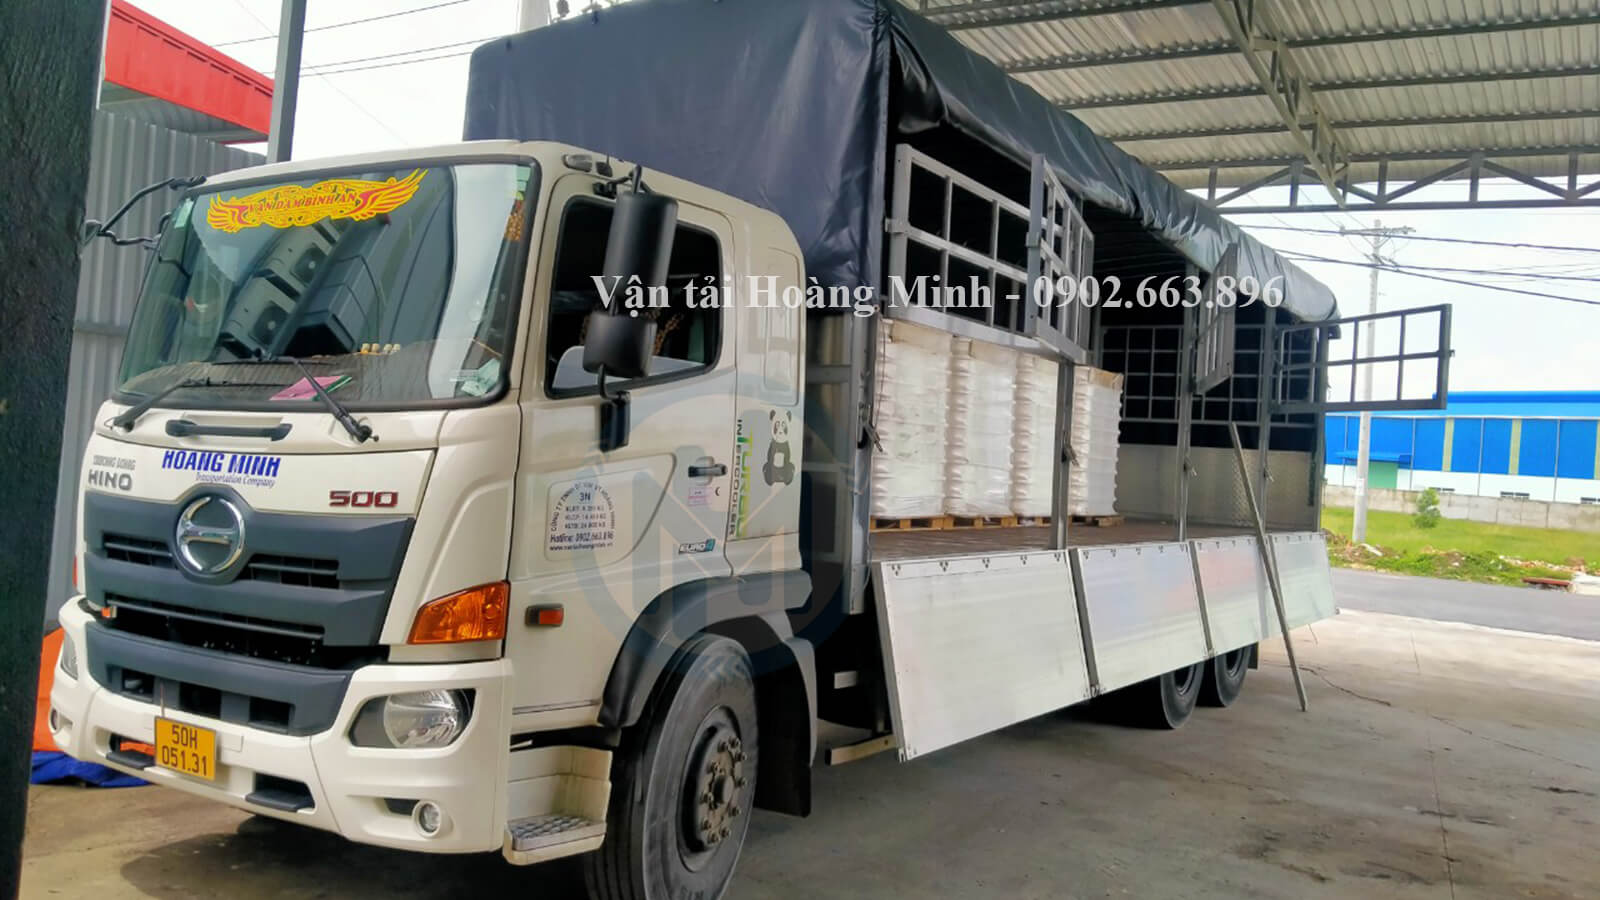 Hình ảnh xe tải Hoàng Minh chở hàng cho khách tại KCN Ô Môn.jpg